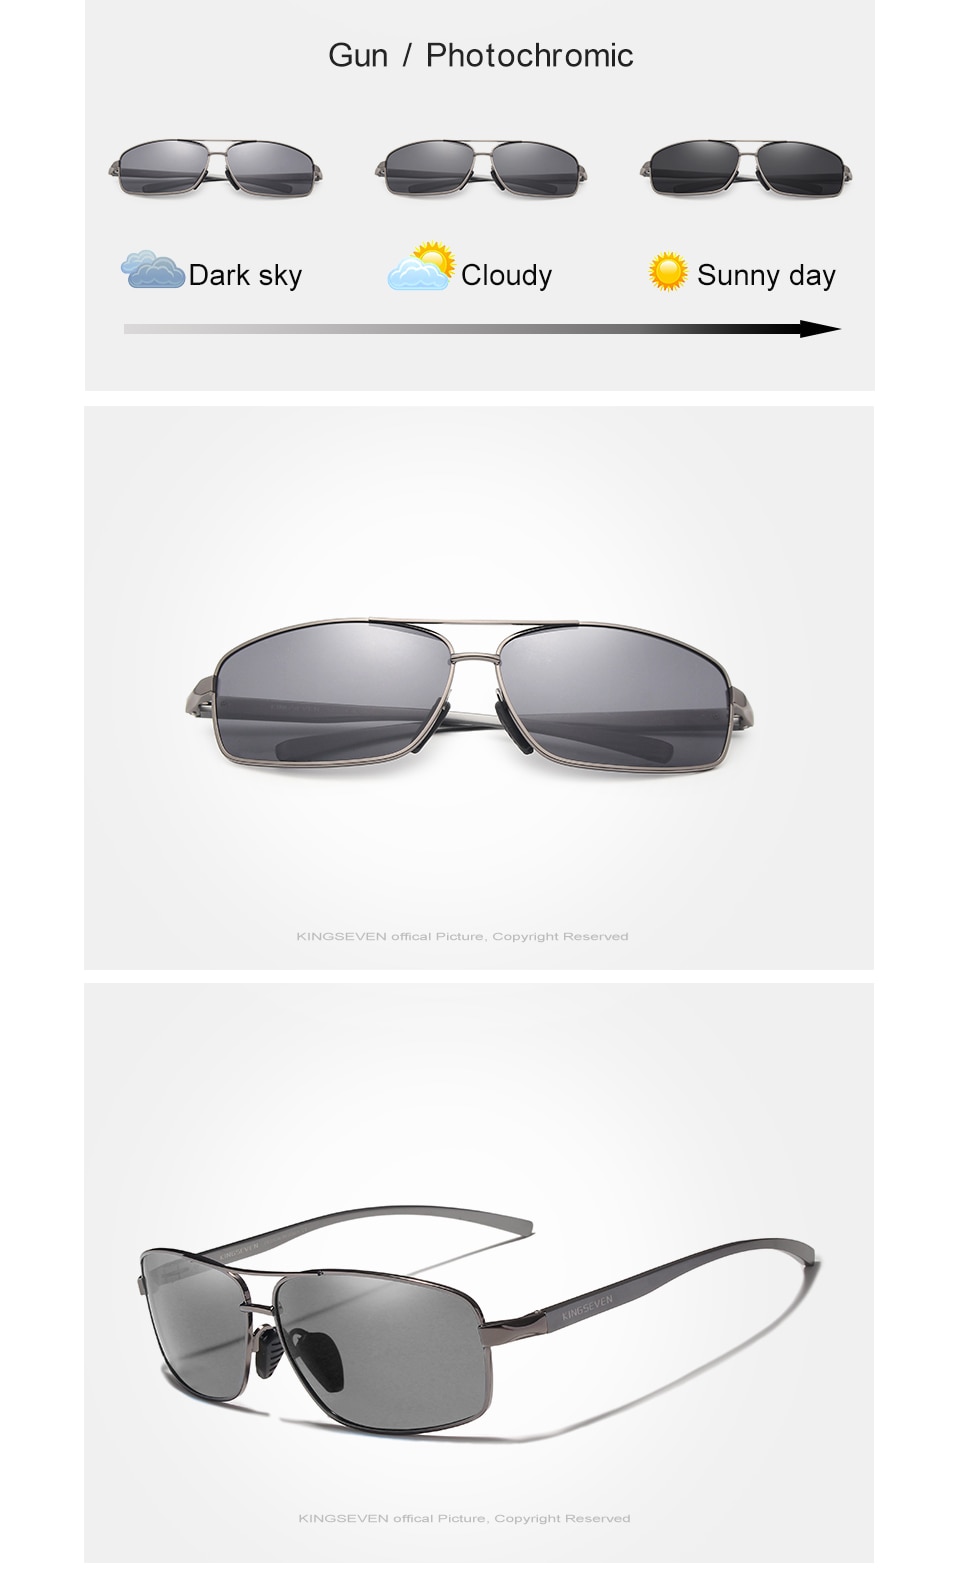 KINGSEVEN New Photochromic Sunglasses Men Polarized Chameleon Glasses Male Sun Glasses Day Night Vision Driving Eyewear N7088